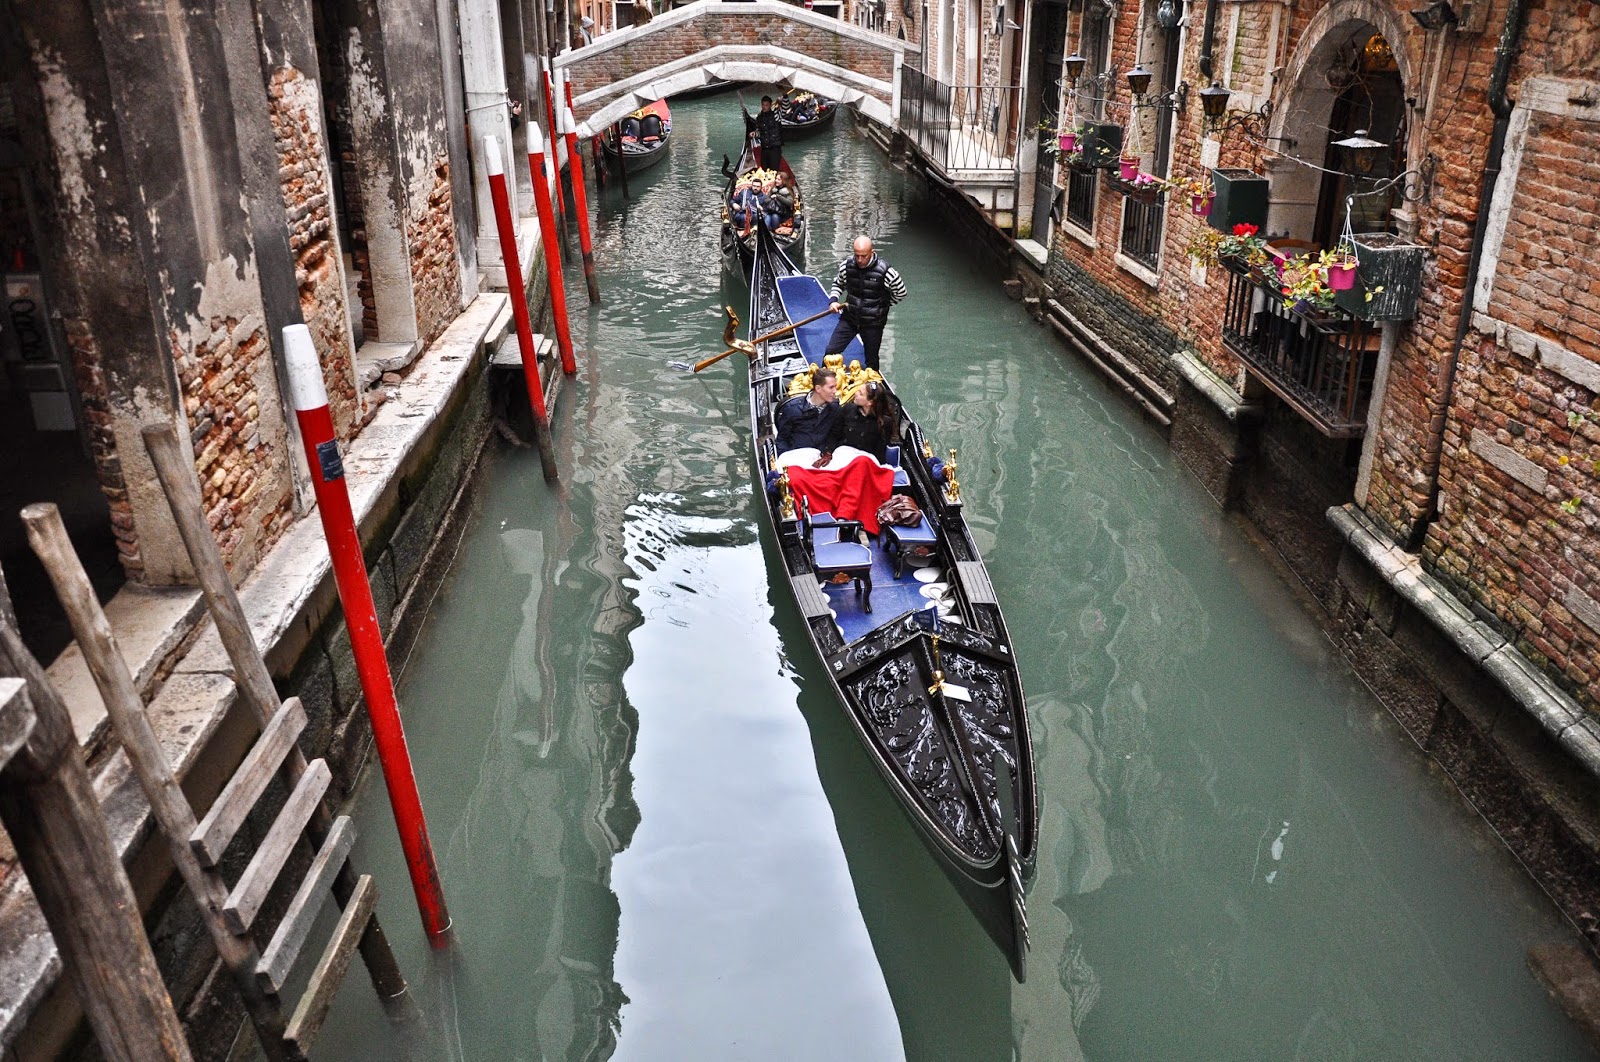 A romantic gondola ride in Venice